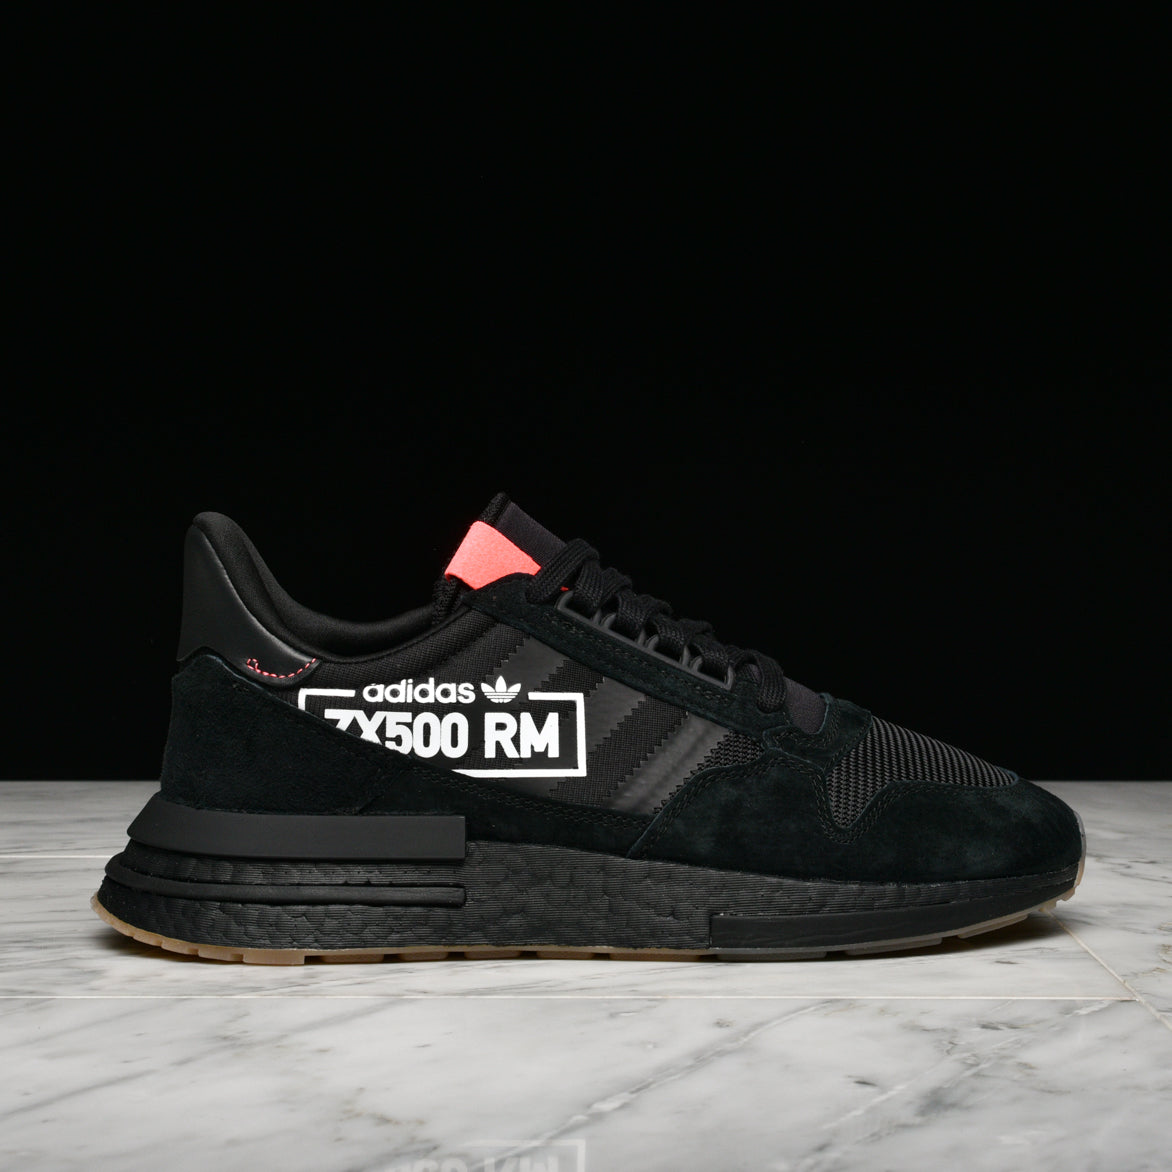 zx 500 rm shoes black